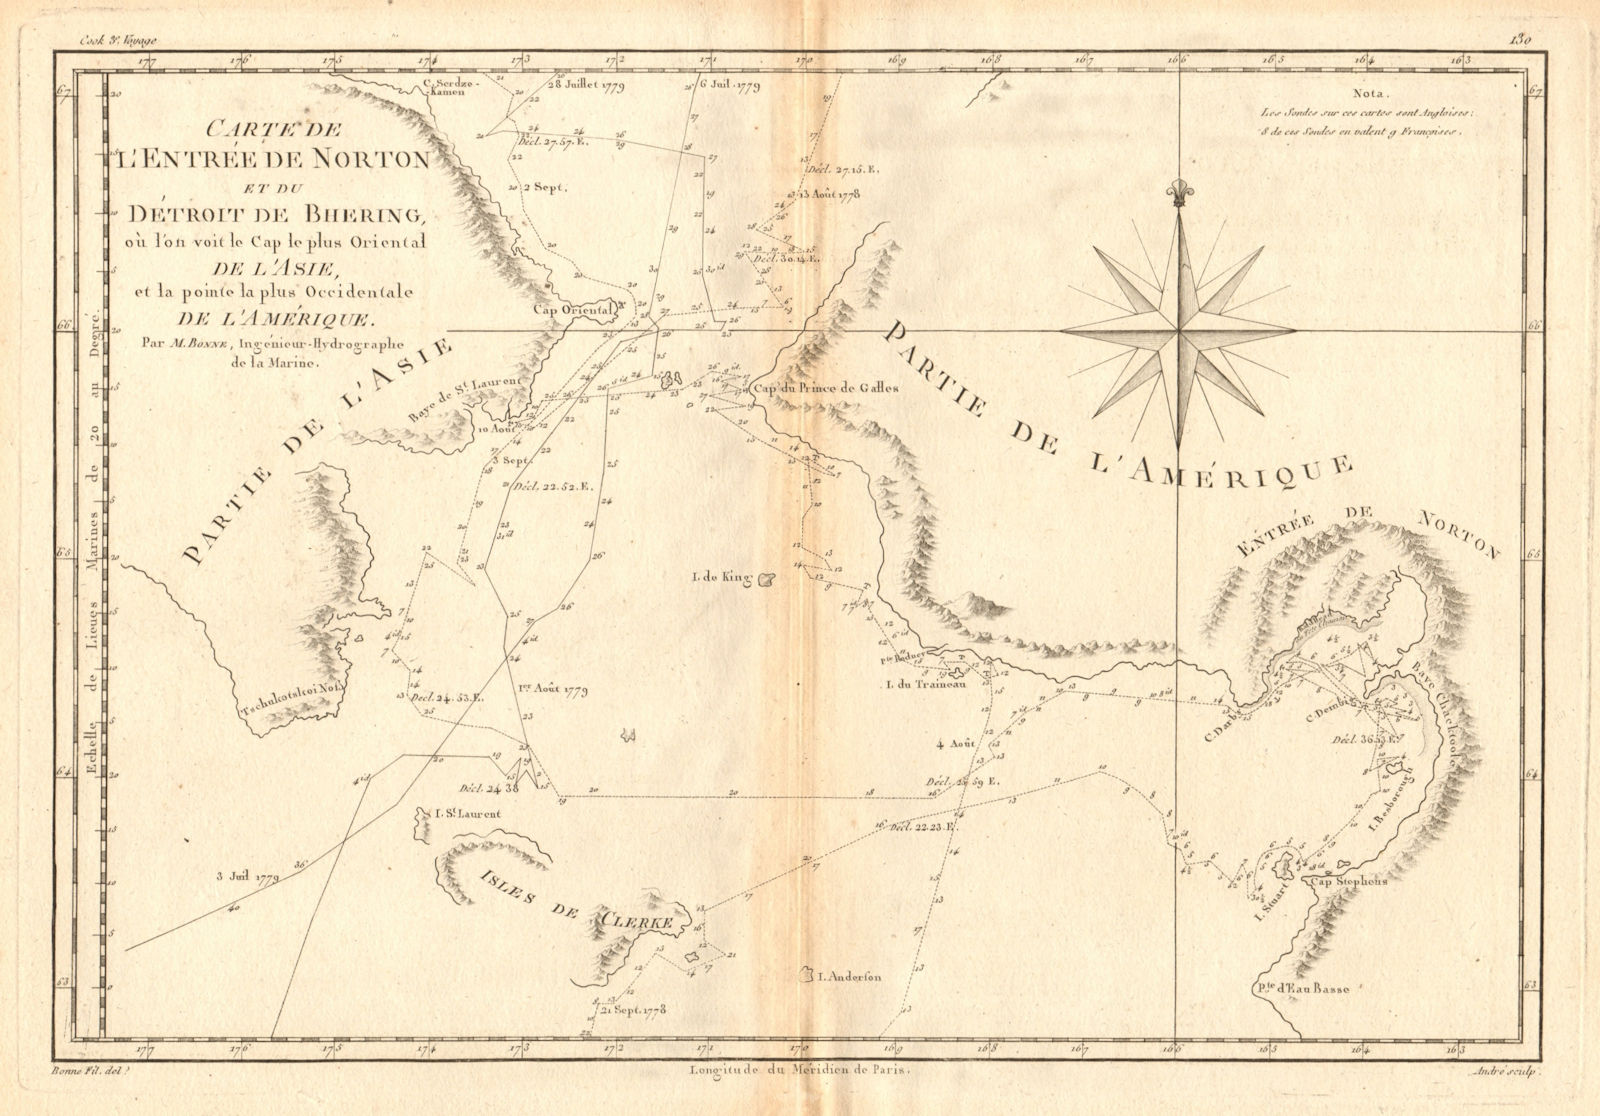 Associate Product Entrée de Norton & Détroit de Bhering. Bering Strait Norton Sound BONNE 1788 map